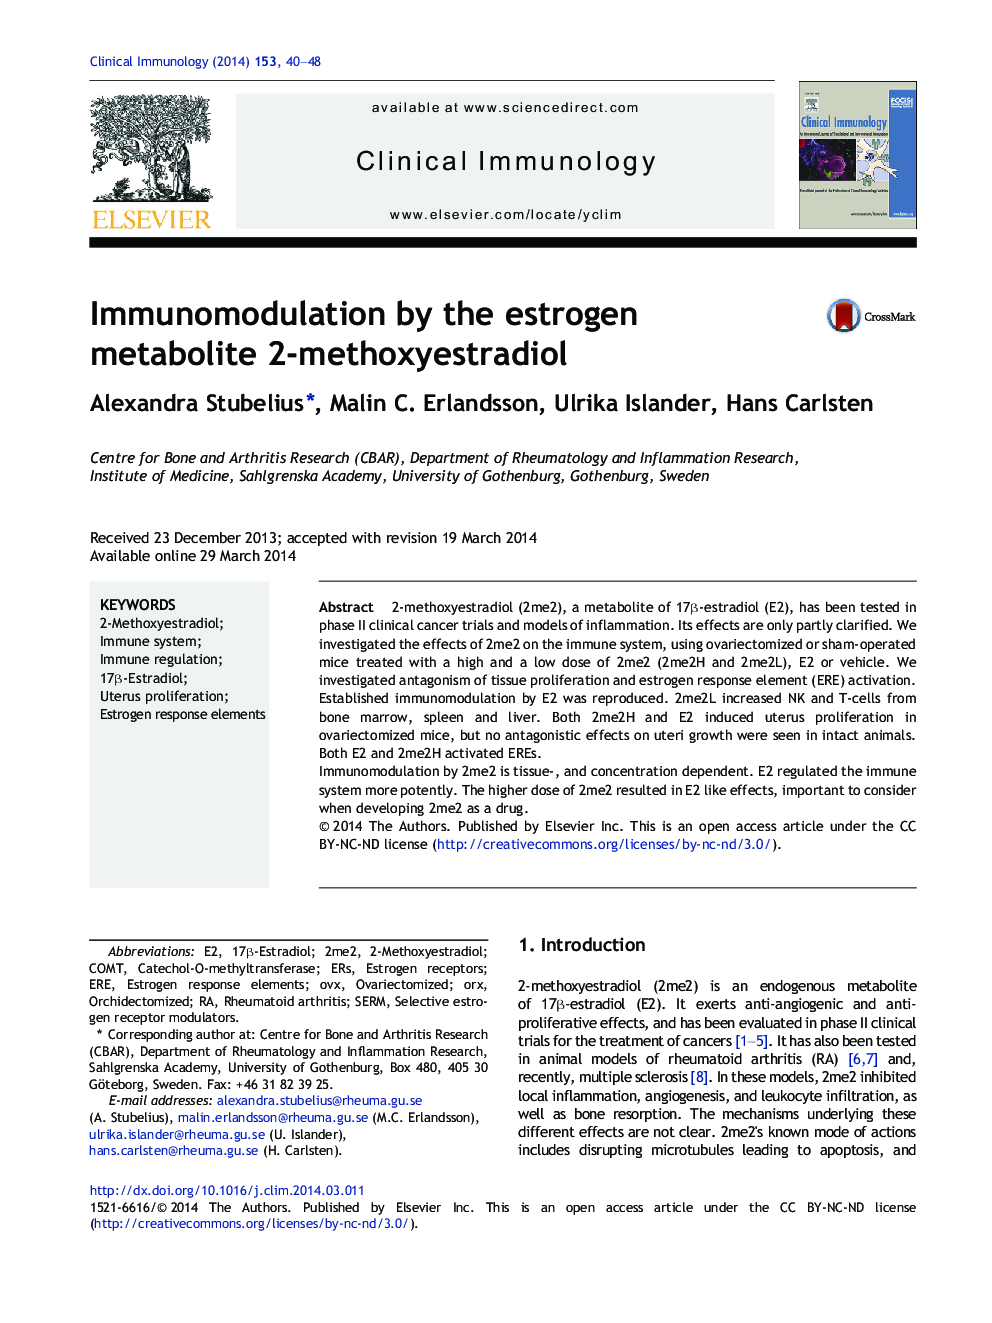 Immunomodulation by the estrogen metabolite 2-methoxyestradiol